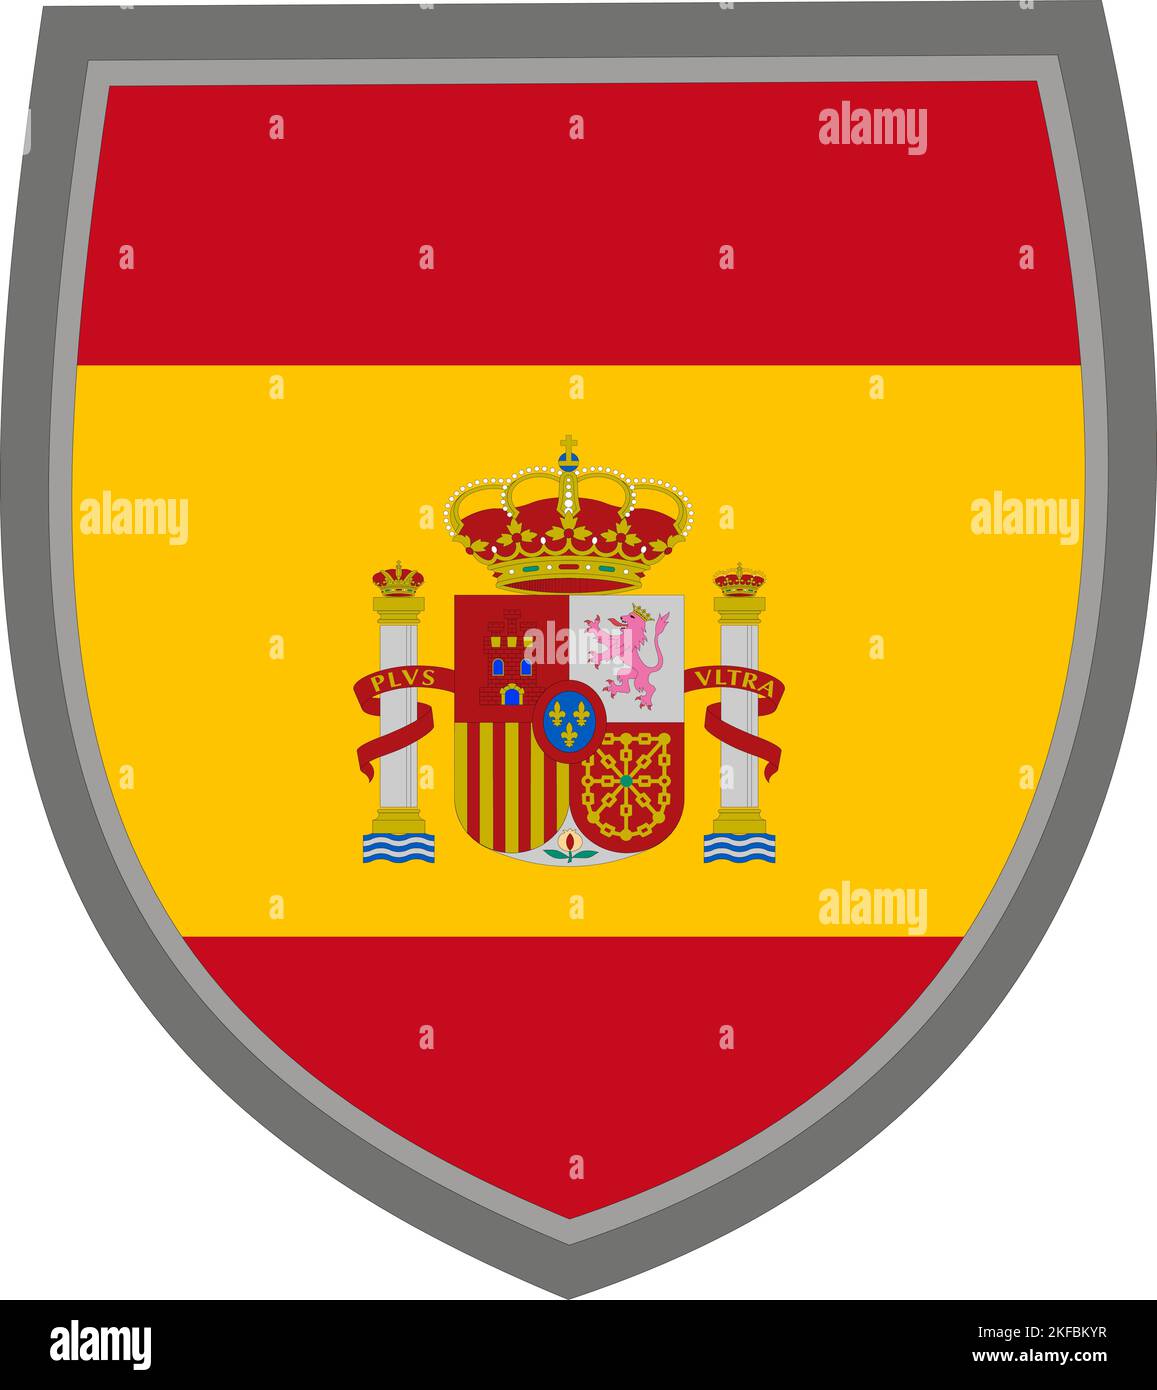 Escudo con la bandera de colores del Reino de España, bandera española cortada Ilustración del Vector